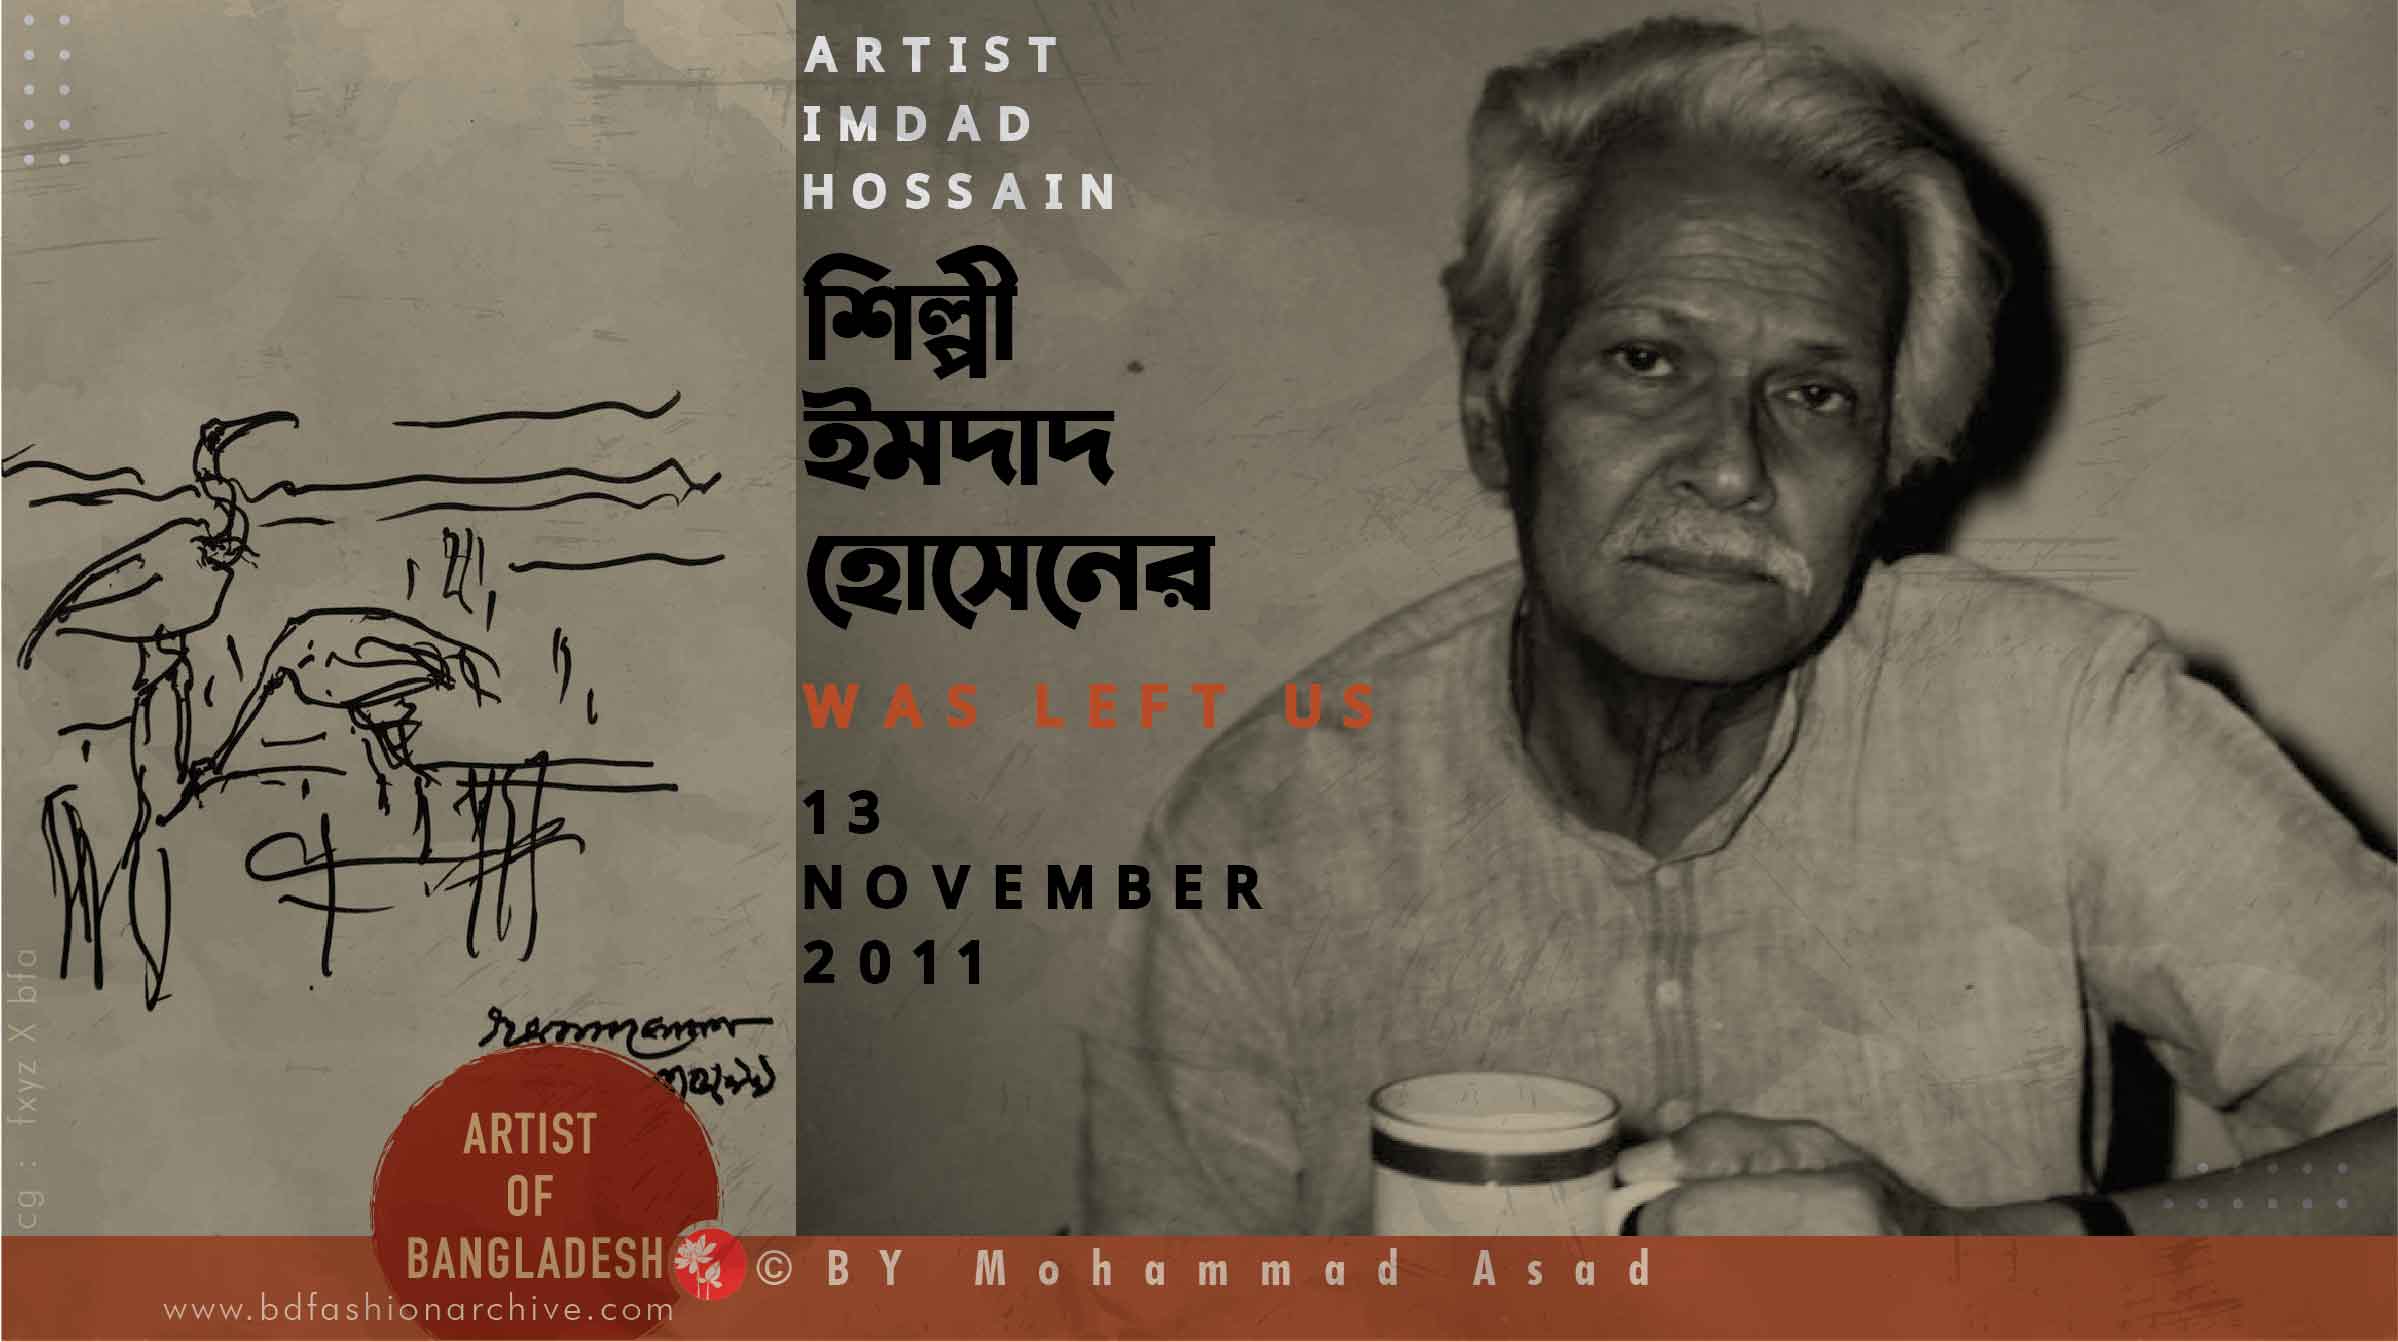 শিল্পী ইমদাদ হোসেন | IMDAD HOSSAIN